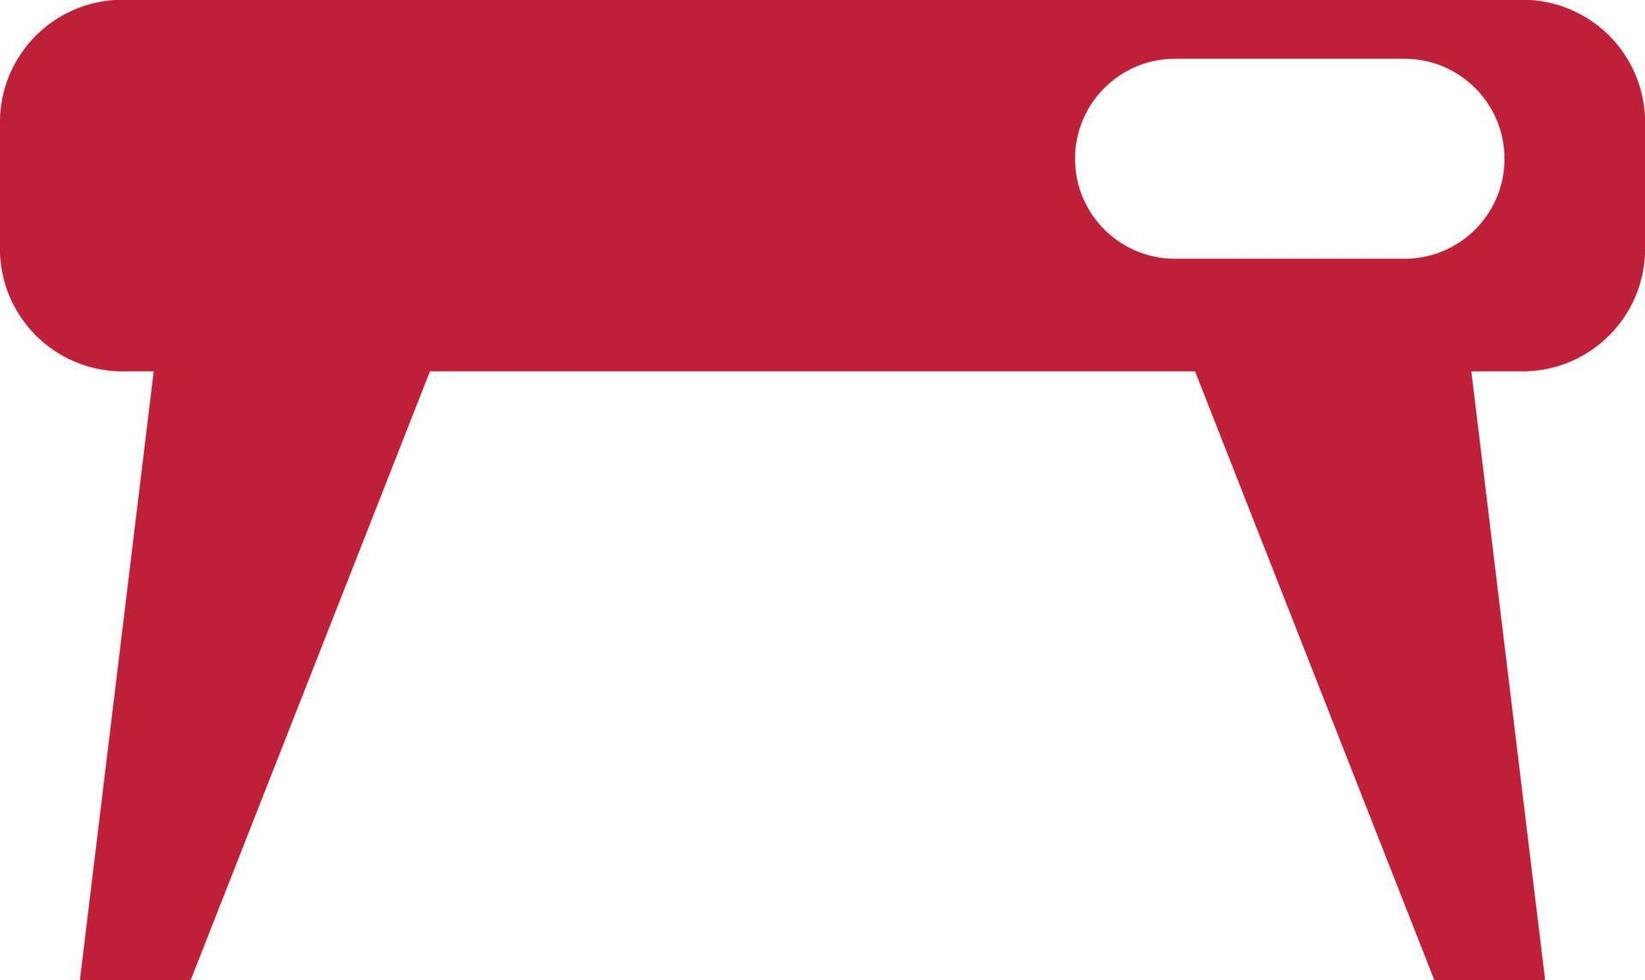 röd tabell, illustration, vektor på en vit bakgrund.